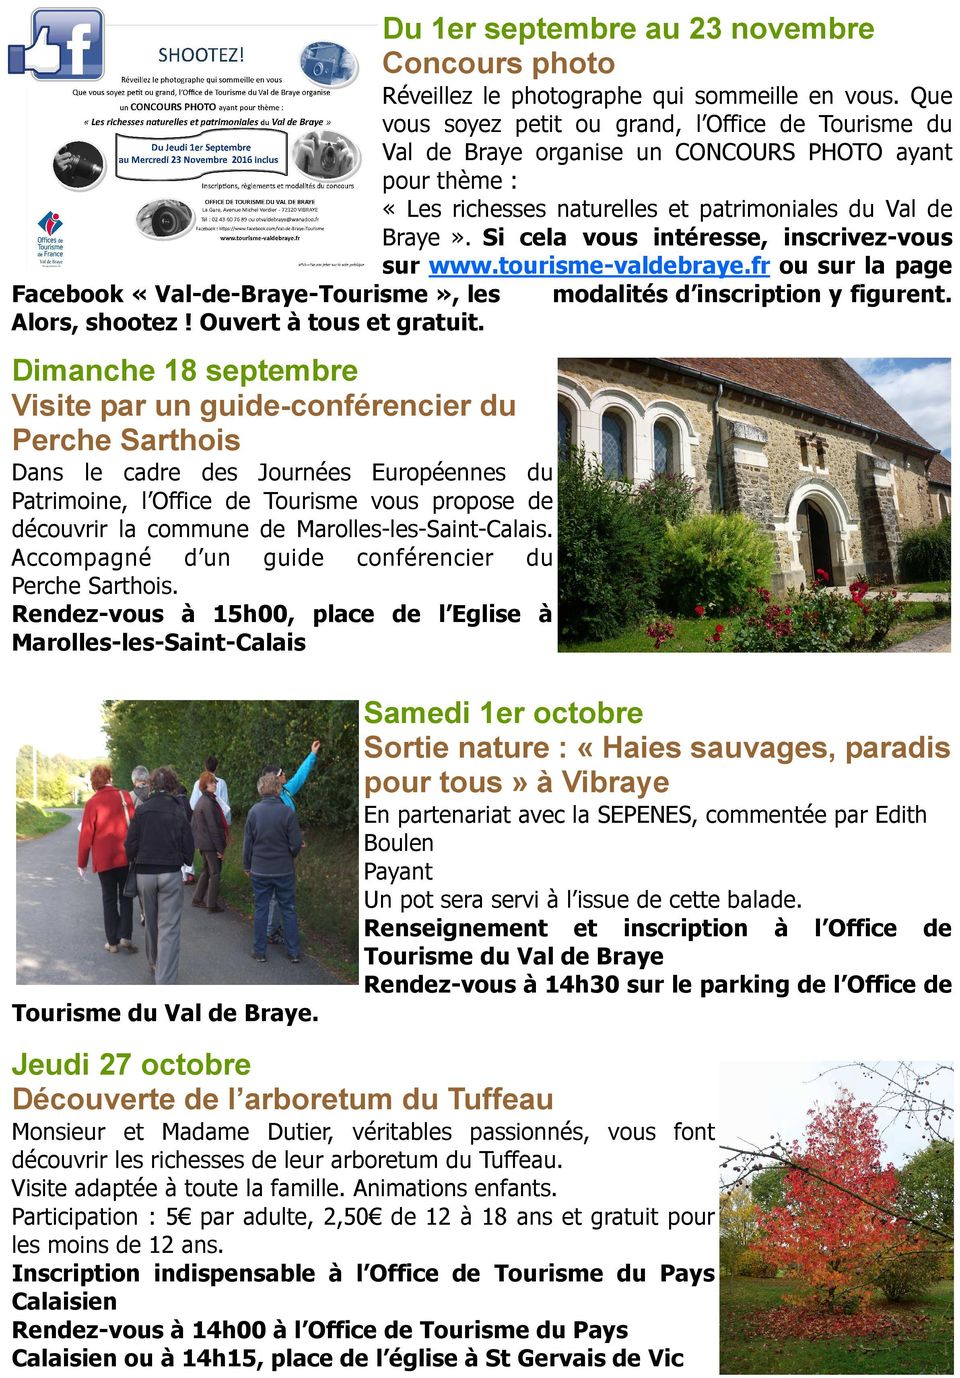 Si cela vous intéresse, inscrivez-vous sur www.tourisme-valdebraye.fr ou sur la page Facebook «Val-de-Braye-Tourisme», les modalités d inscription y figurent. Alors, shootez! Ouvert à tous et gratuit.